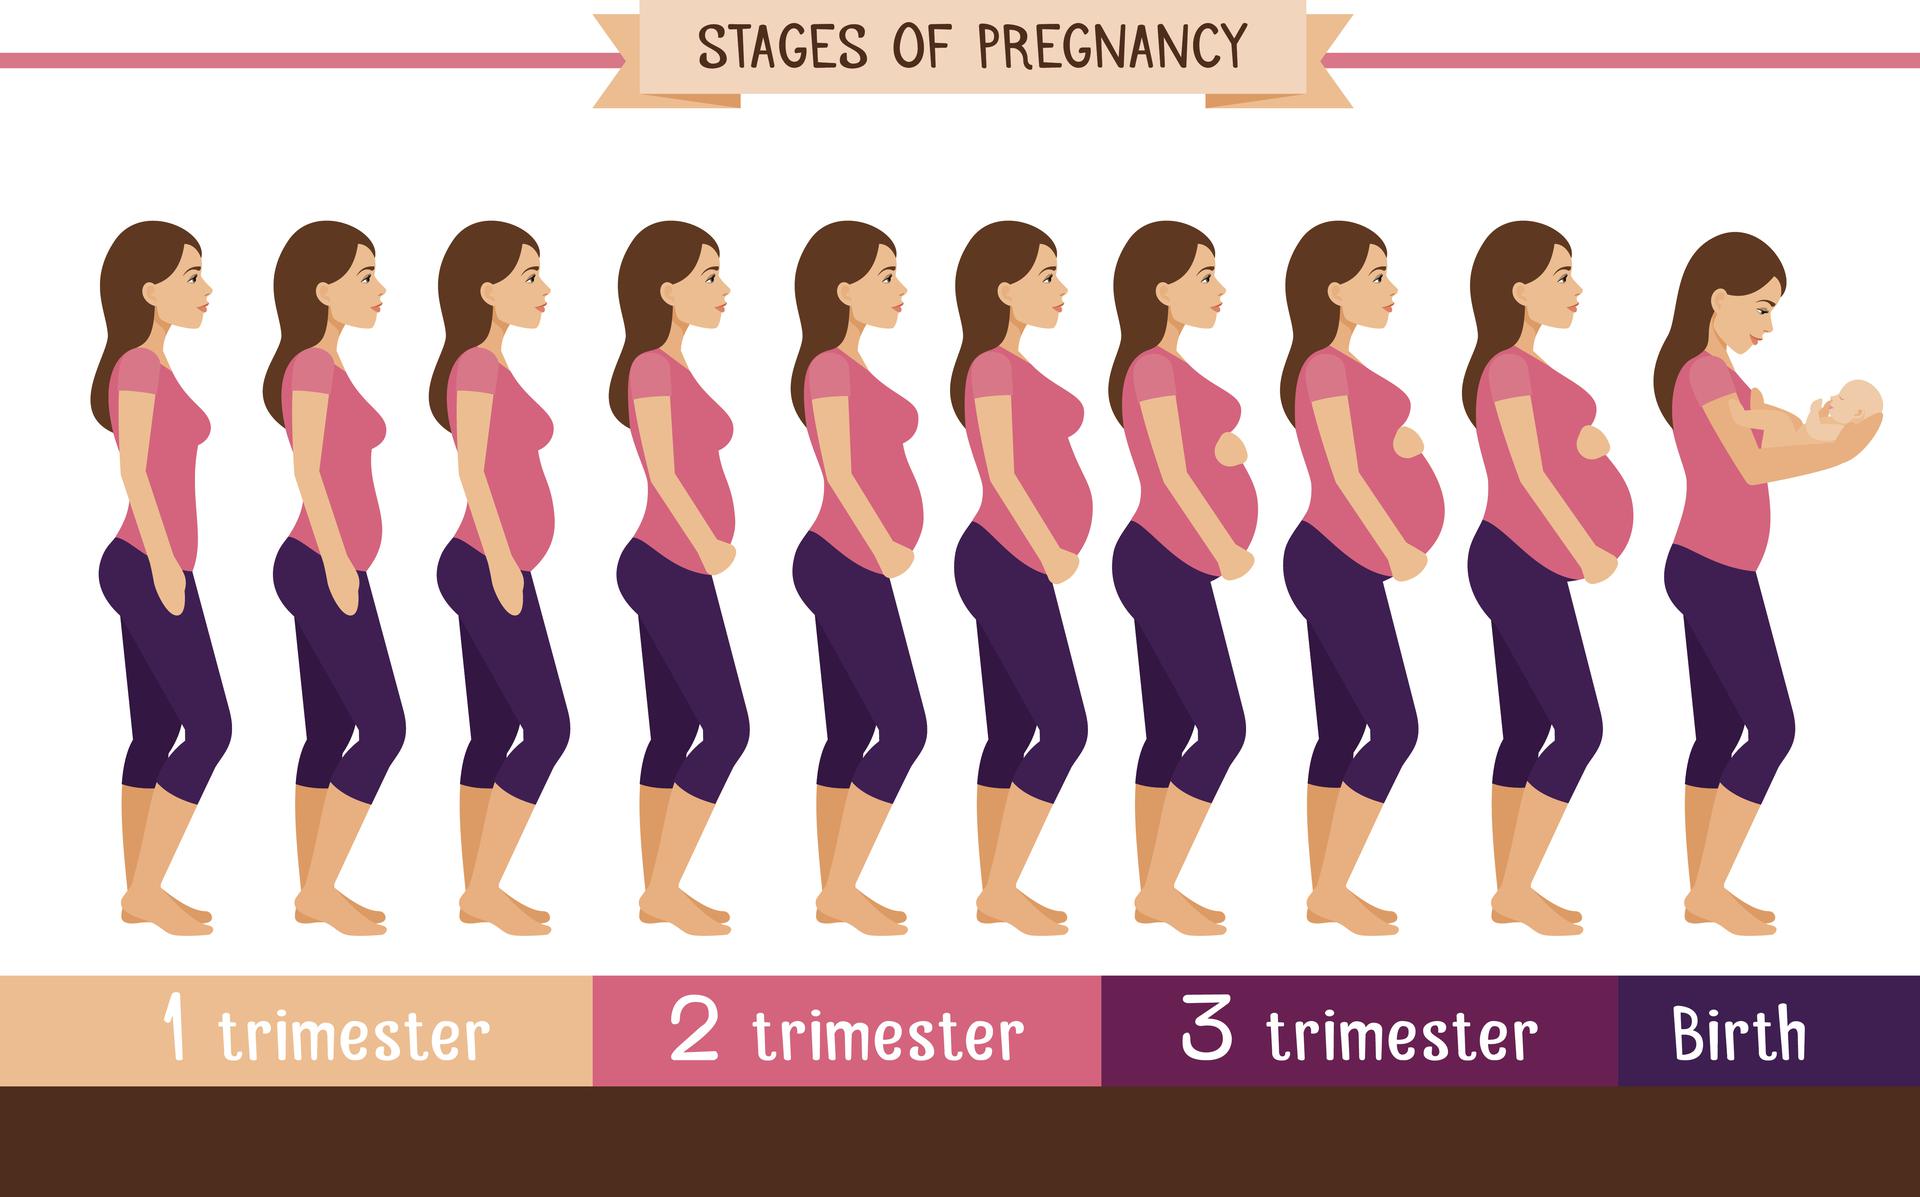 Живот по срокам недели. Этапы беременности. Этапы беременности по месяцам. Размер живота у беременных по месяцам. Срок беременности по животу.